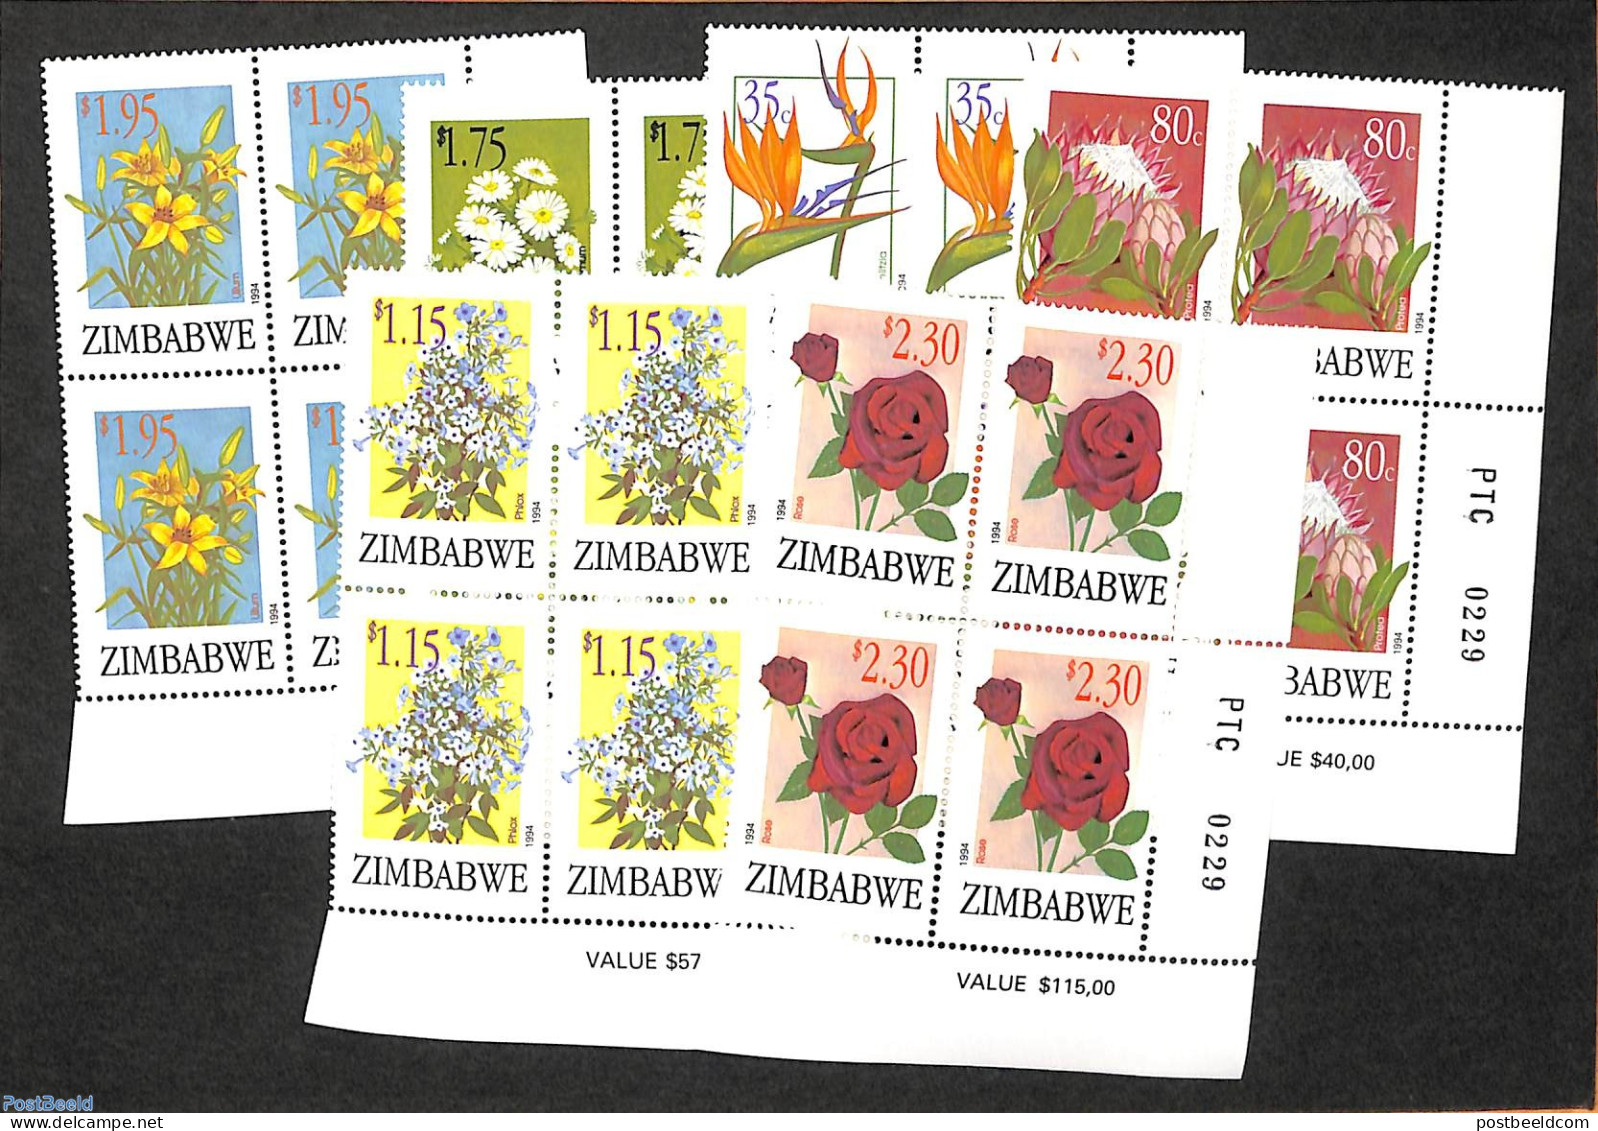 Zimbabwe 1994 Flowers, Corner Blocks Of 4 [+], Mint NH, Nature - Flowers & Plants - Zimbabwe (1980-...)